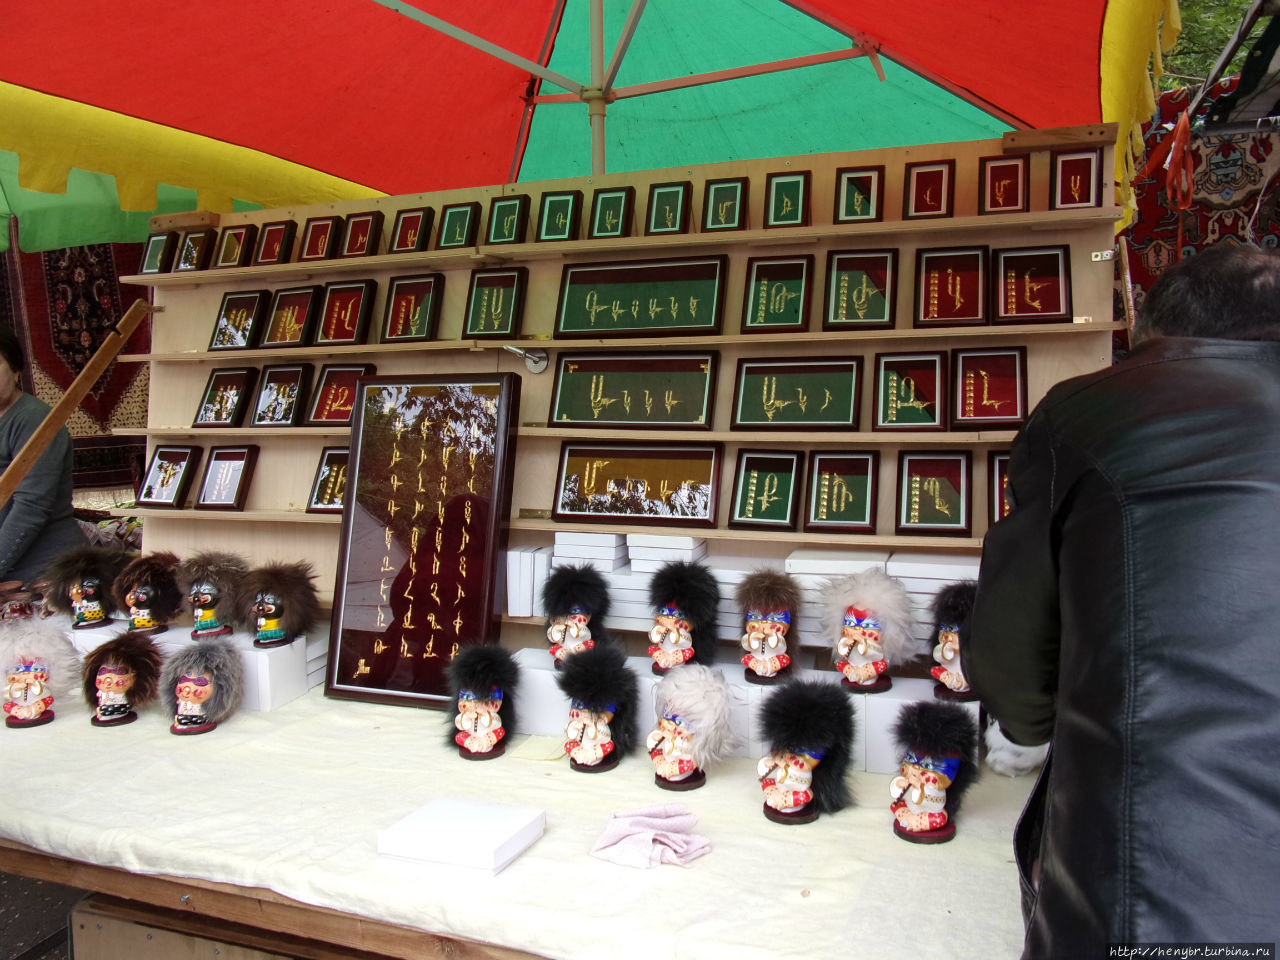 Ереванский Вернисаж - аналог тбилисского Блошиного рынка